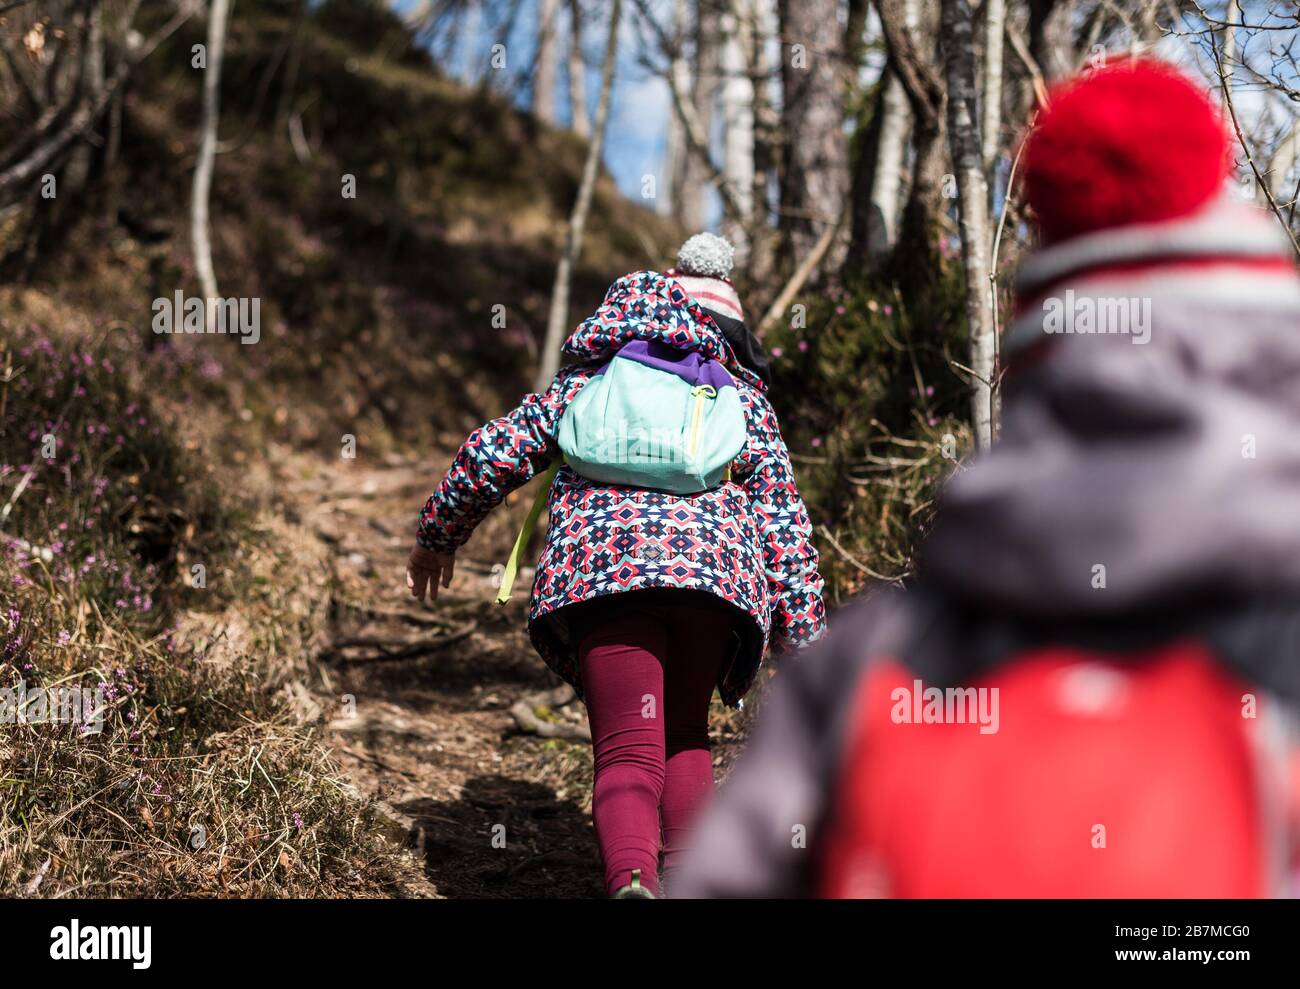 Les enfants randonnée dans les montagnes ou dans les bois lors d'un voyage en famille. Famille active, parents et enfants alpinisme dans la nature. Les enfants marchent dans les bois Banque D'Images